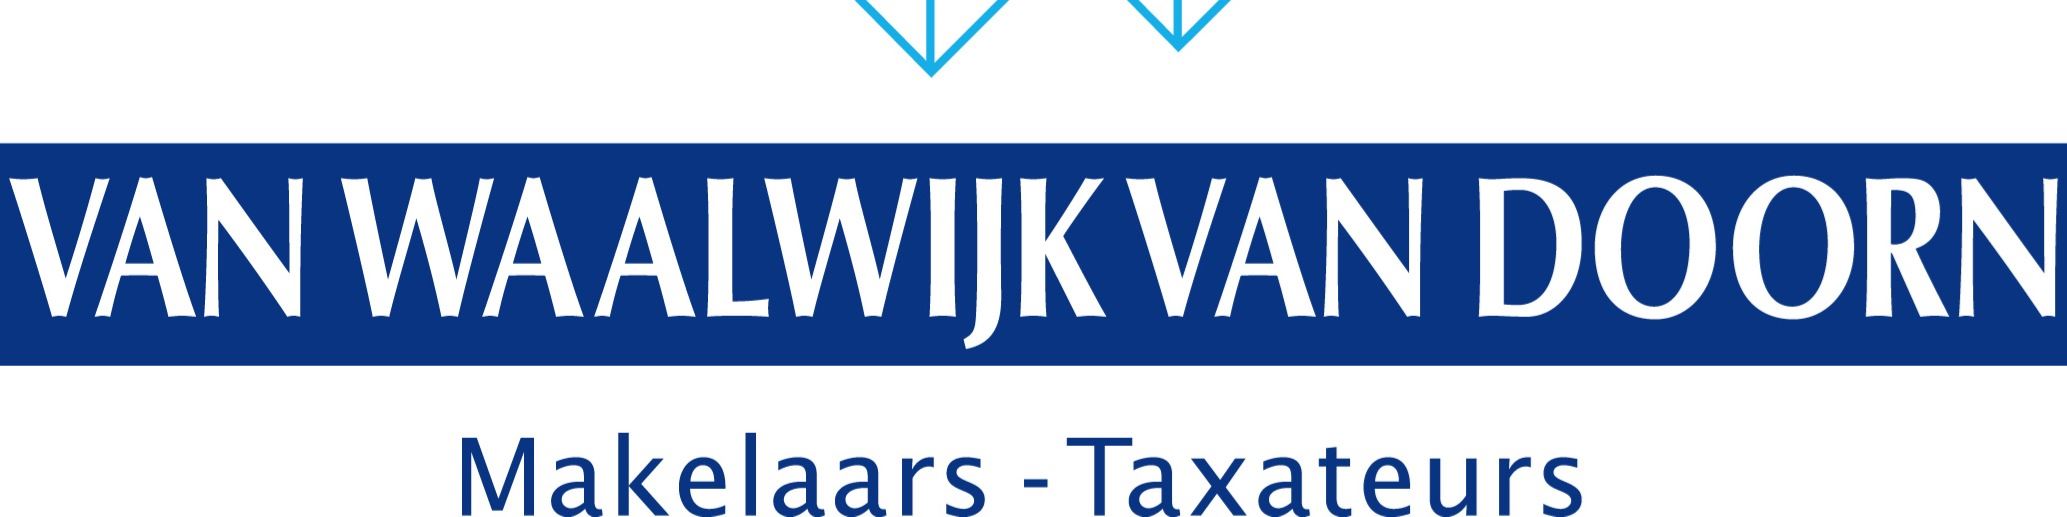 Banner Van Waalwijk Van Doorn Makelaars